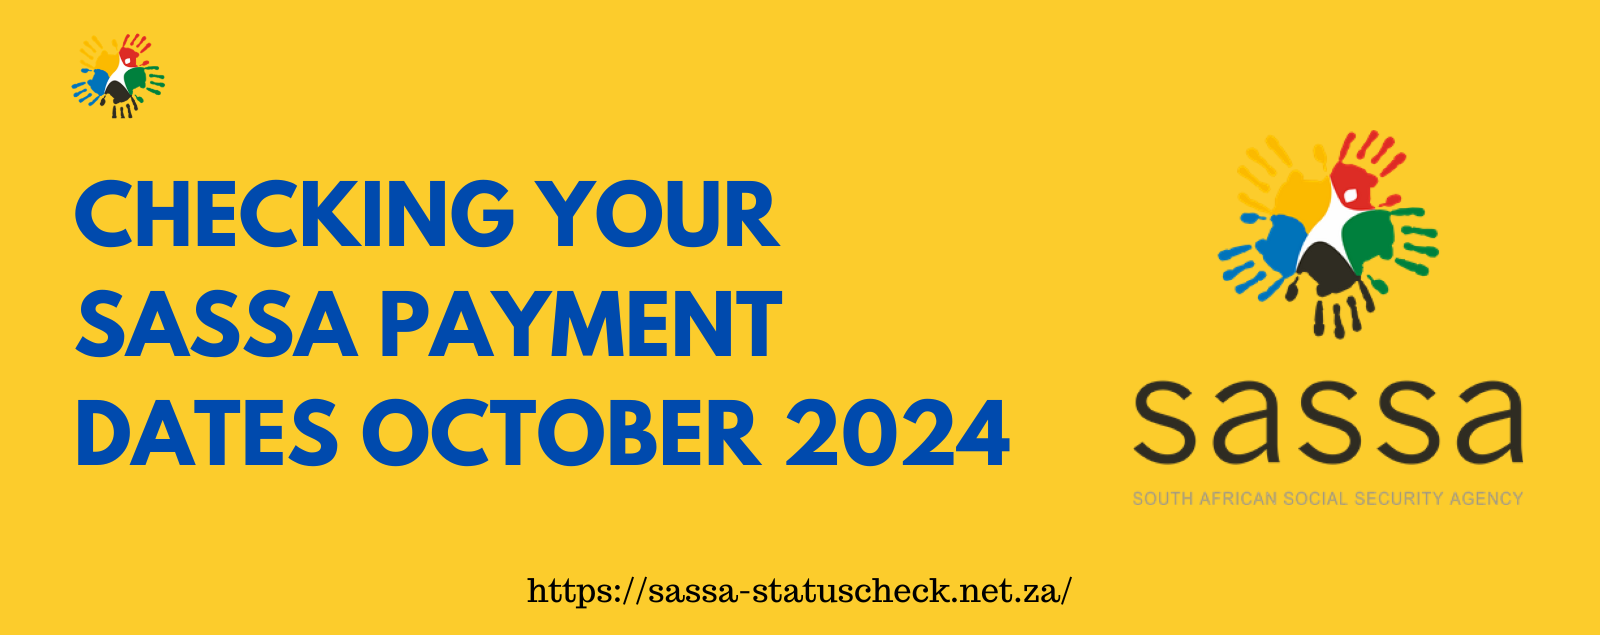 SASSA Payment Dates October 2024